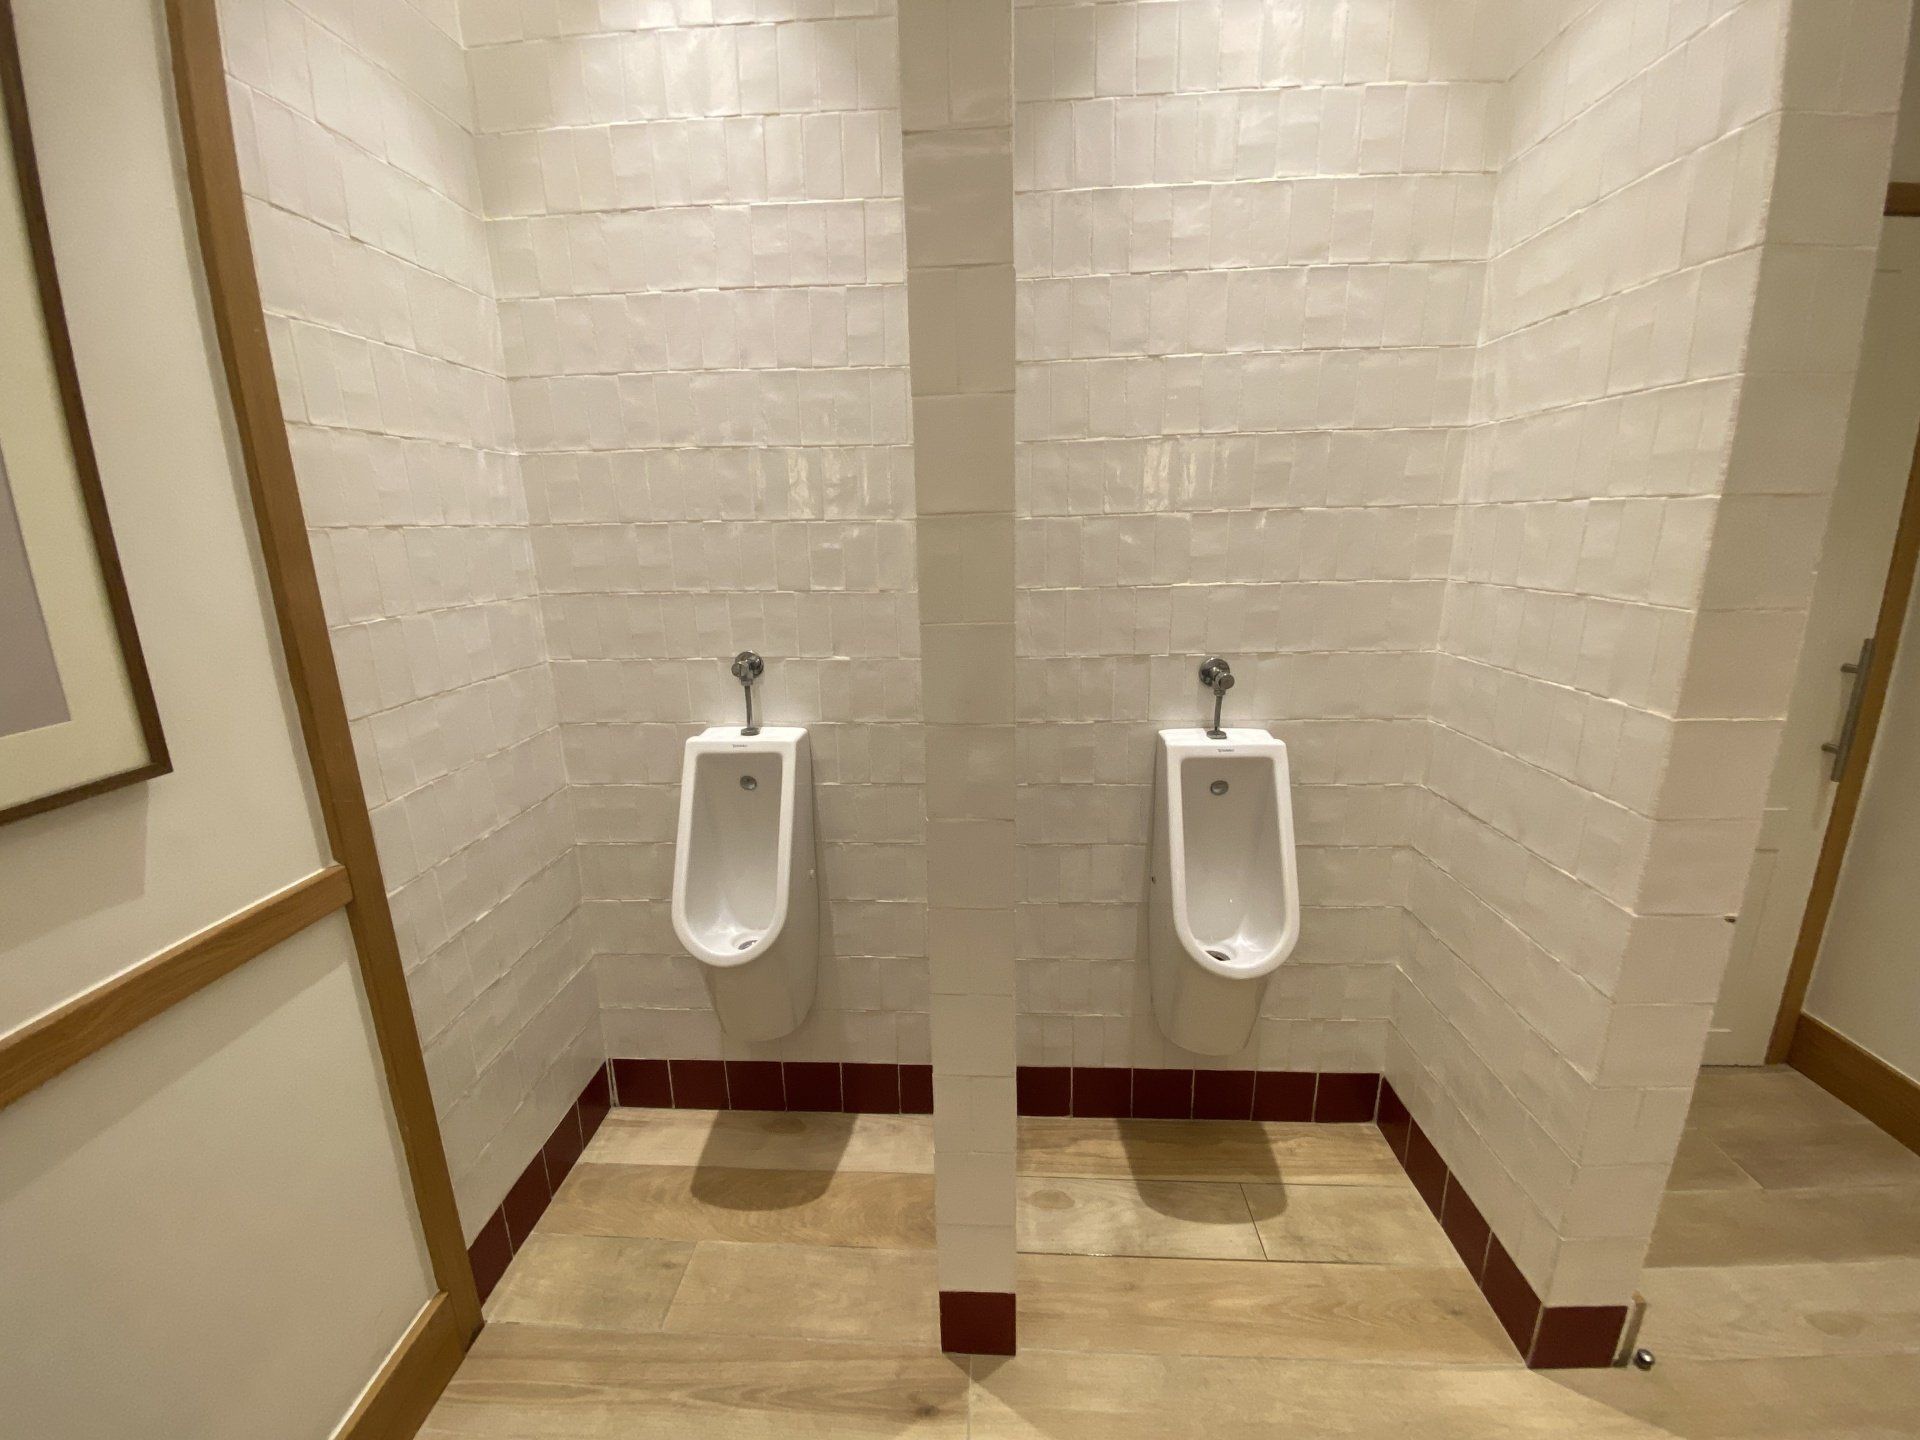 Urinarios con diseño